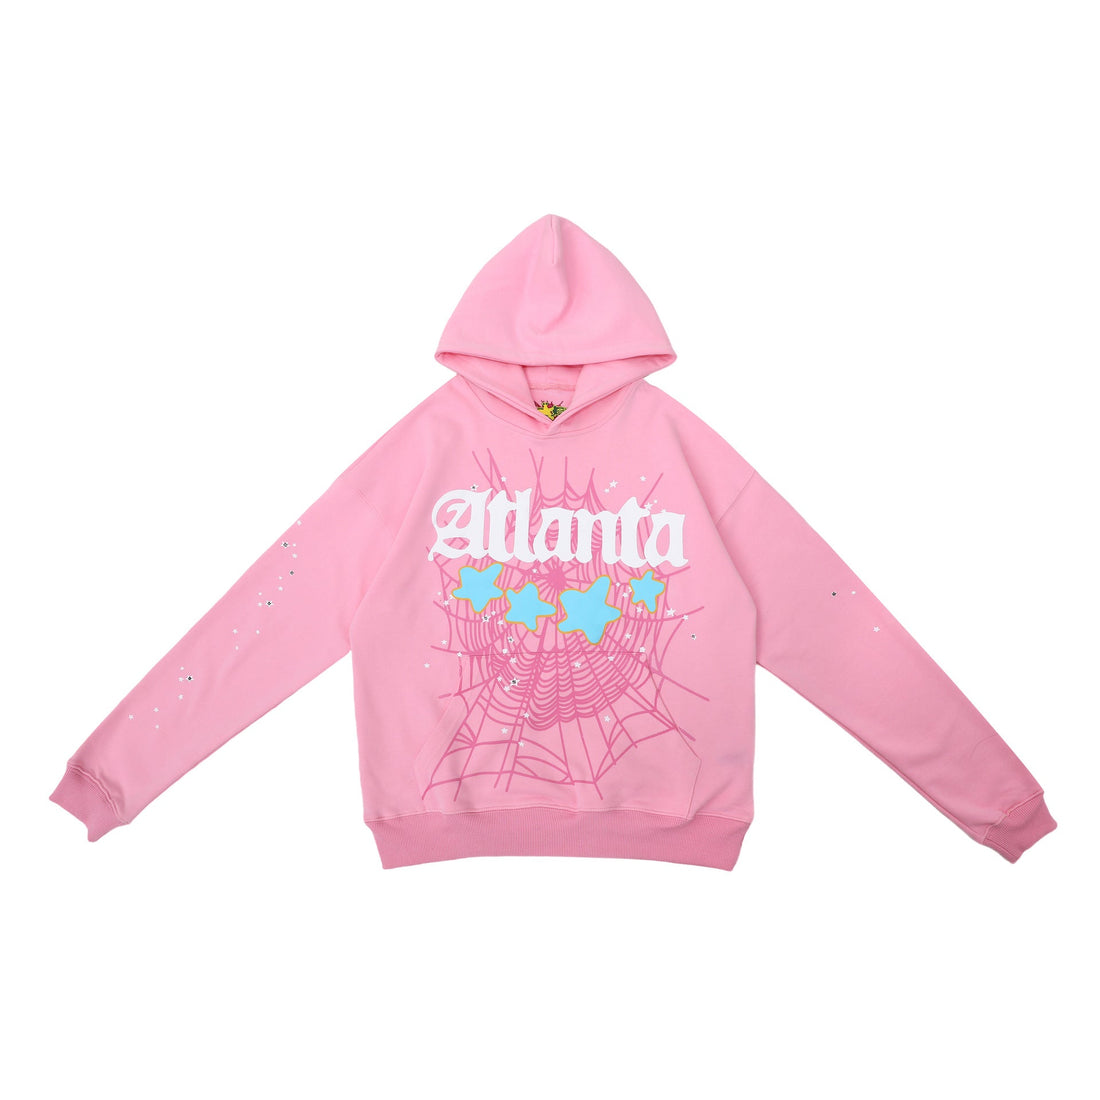 Chic Pink Atlanta Sp5der Hoodie - Trendy Star and Web Print Hooded Sweatshirt - Seakoff